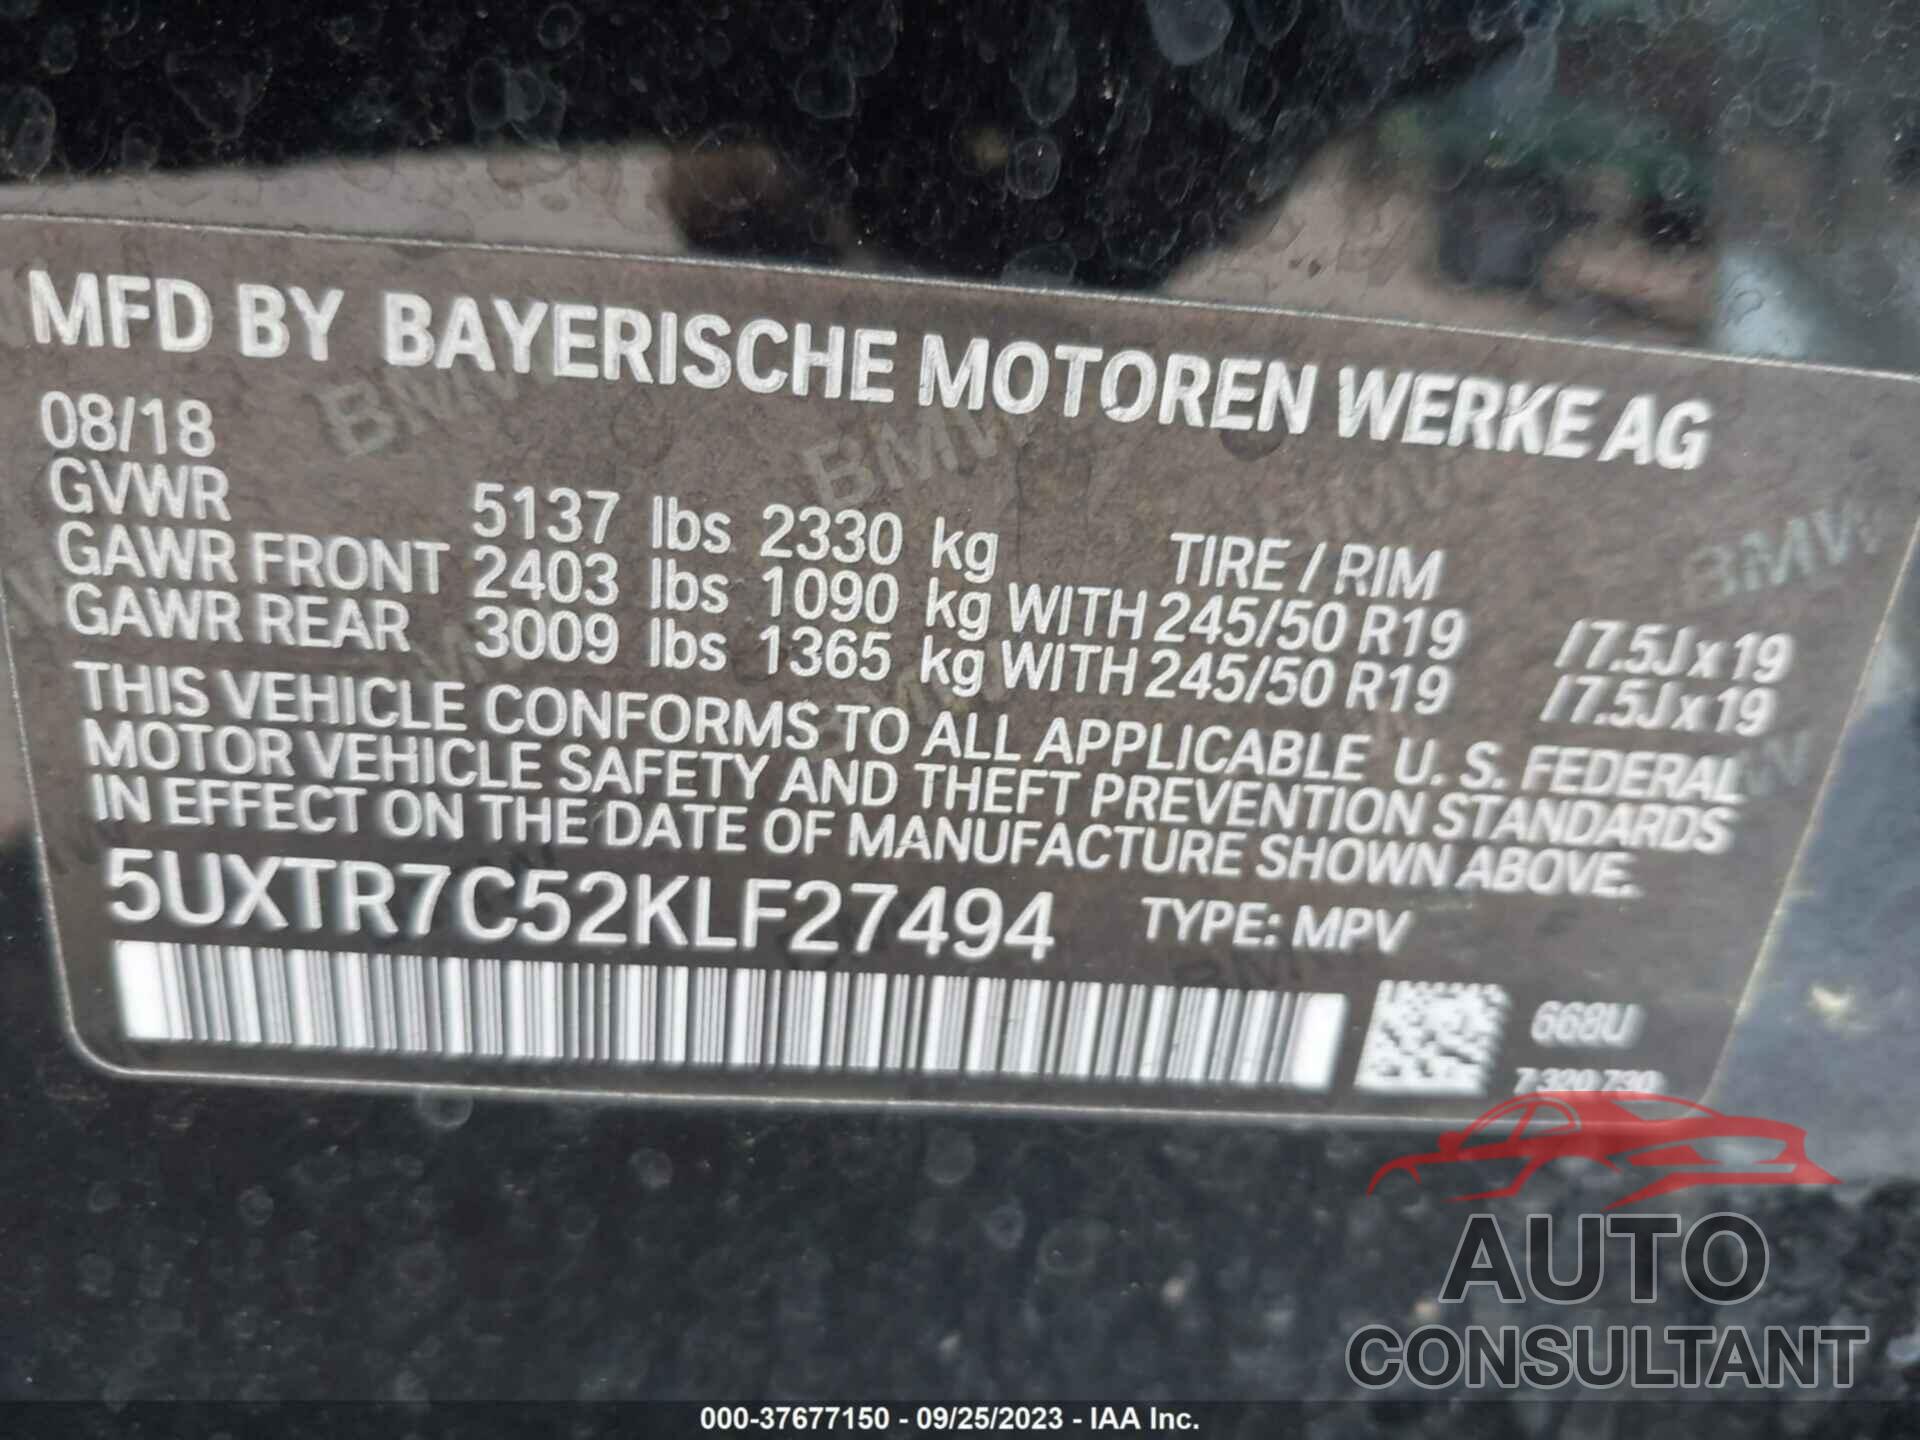 BMW X3 2019 - 5UXTR7C52KLF27494